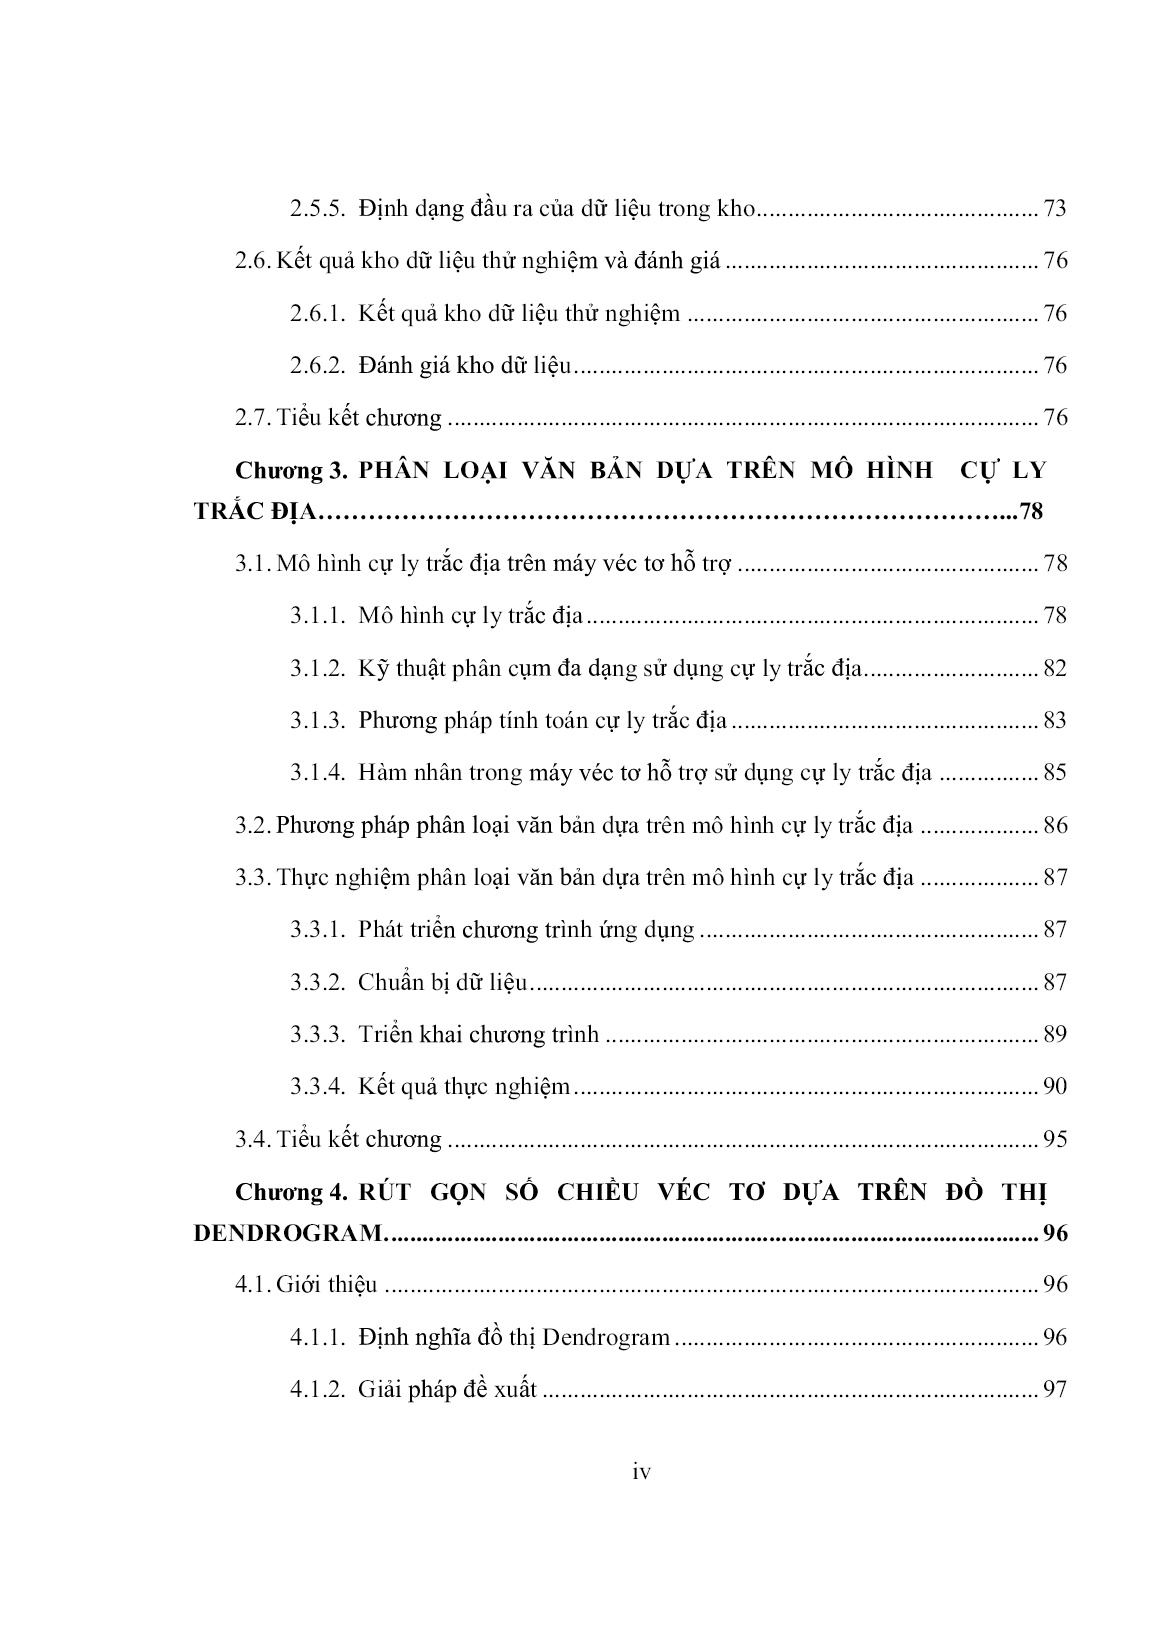 Luận án Nghiên cứu ứng dụng kỹ thuật học bán giám sát vào lĩnh vực phân loại văn bản tiếng Việt trang 6